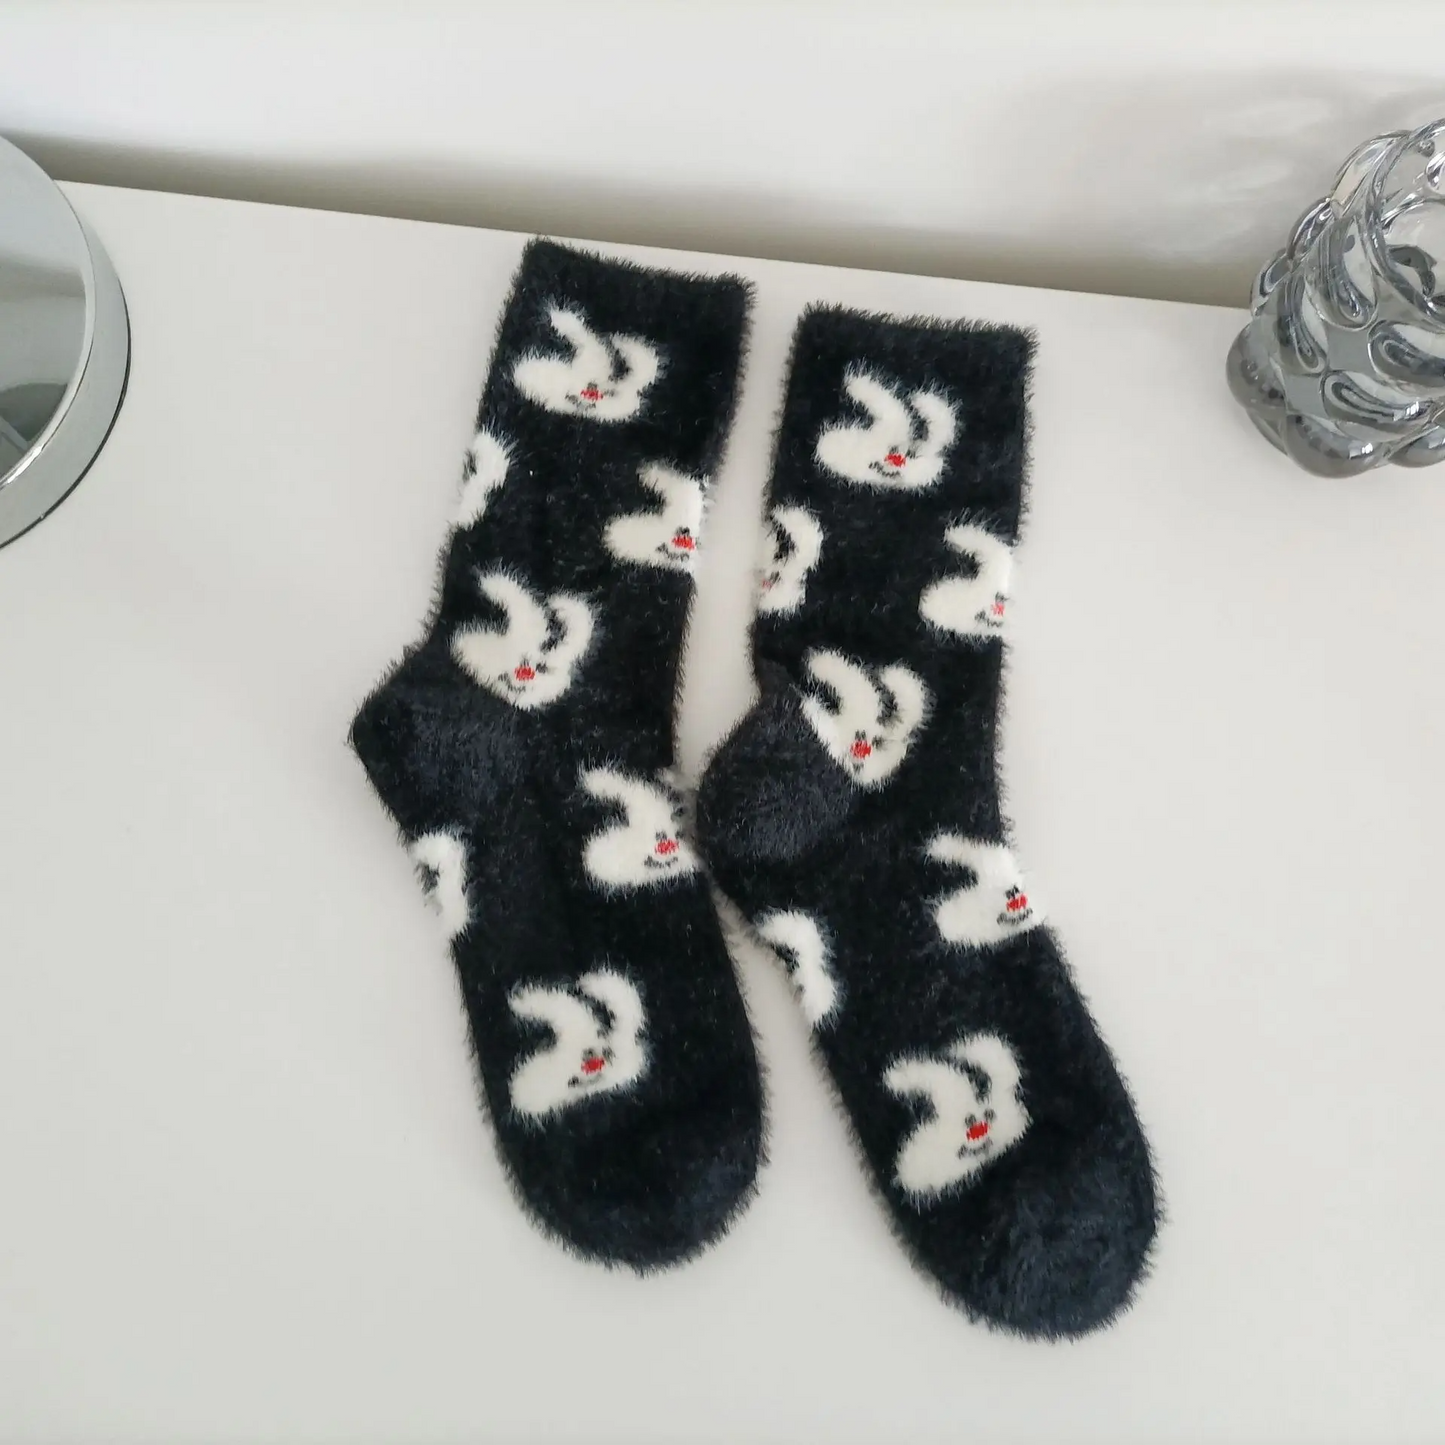 Fuzzy Bunny Ankle Socks